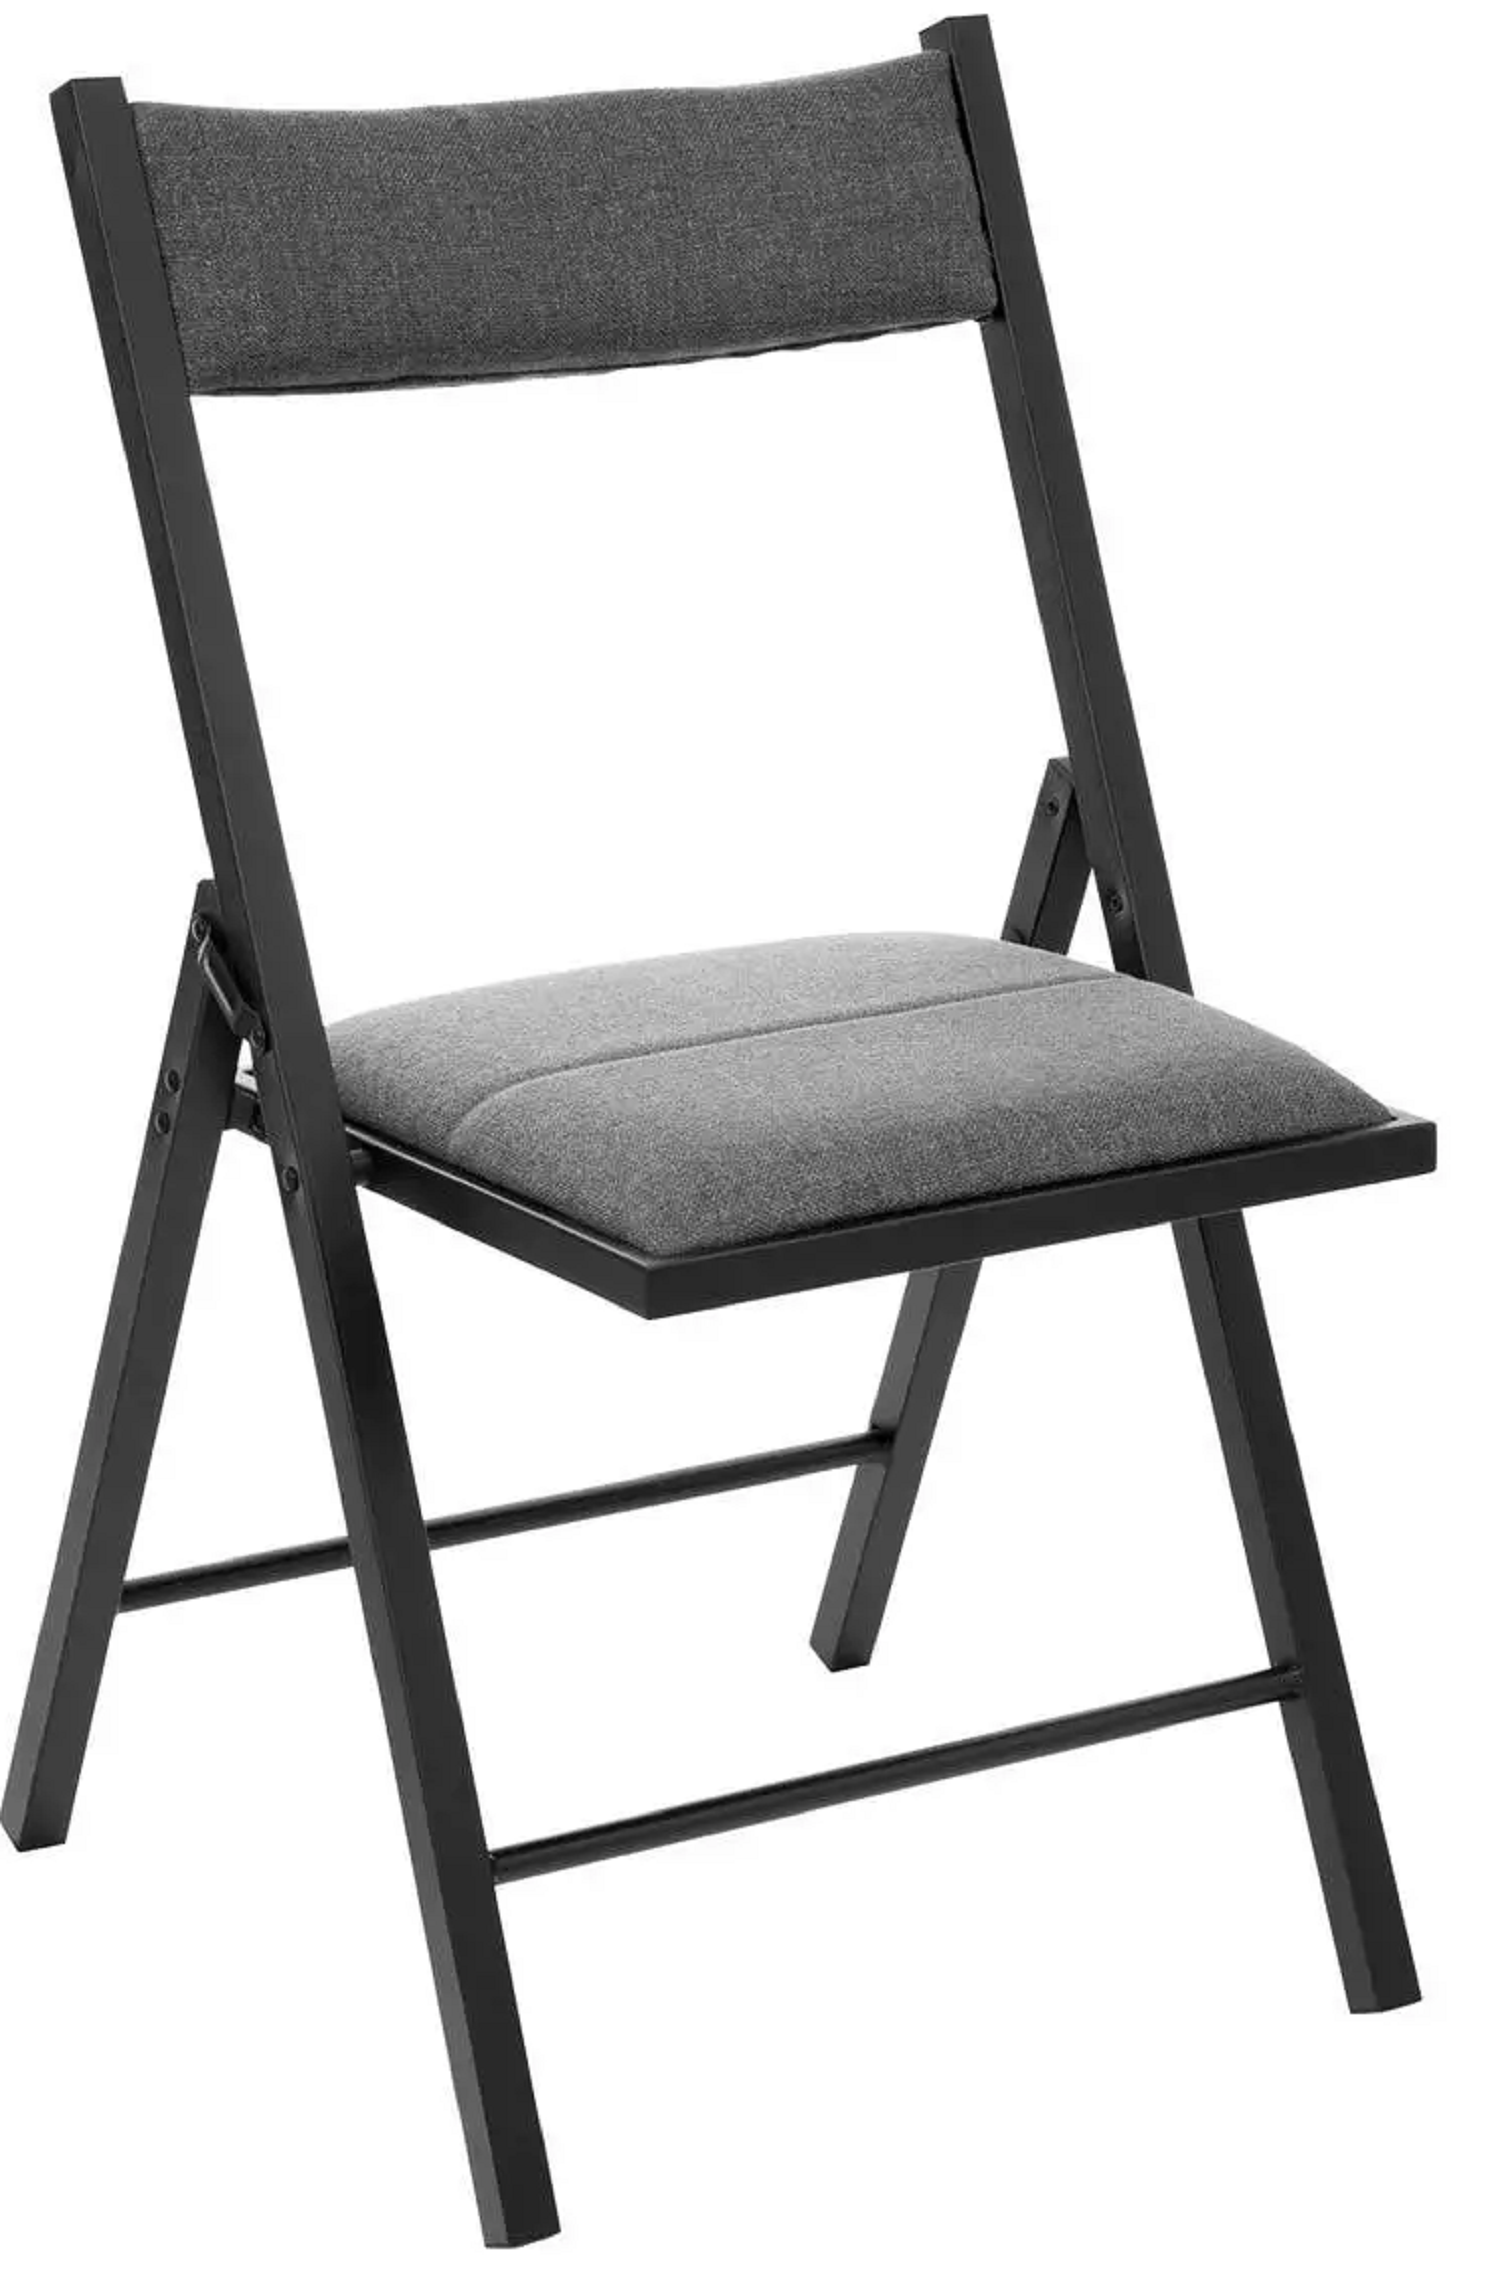 Chaise pliante en bambou / 45 x 50 x 53cm